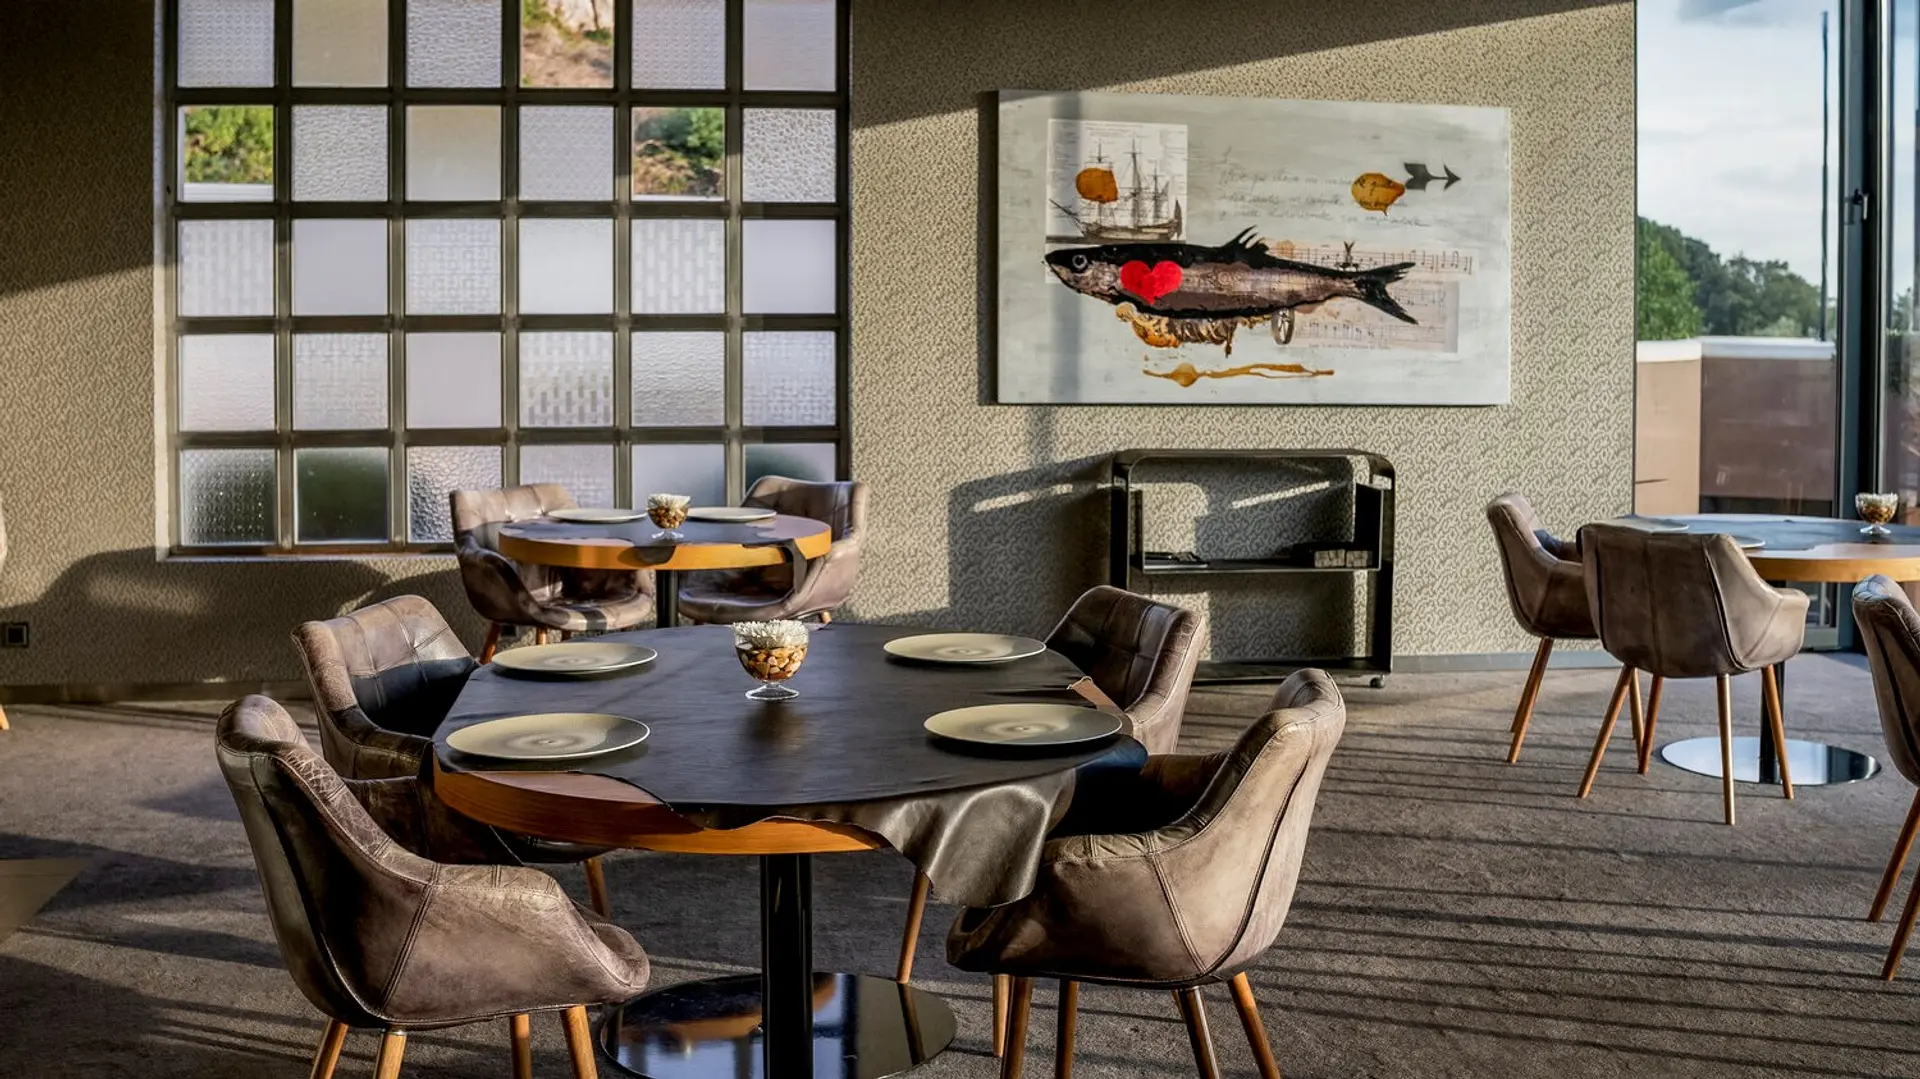 Hotel review What We Love' - Penha Longa Golf Resort - 1